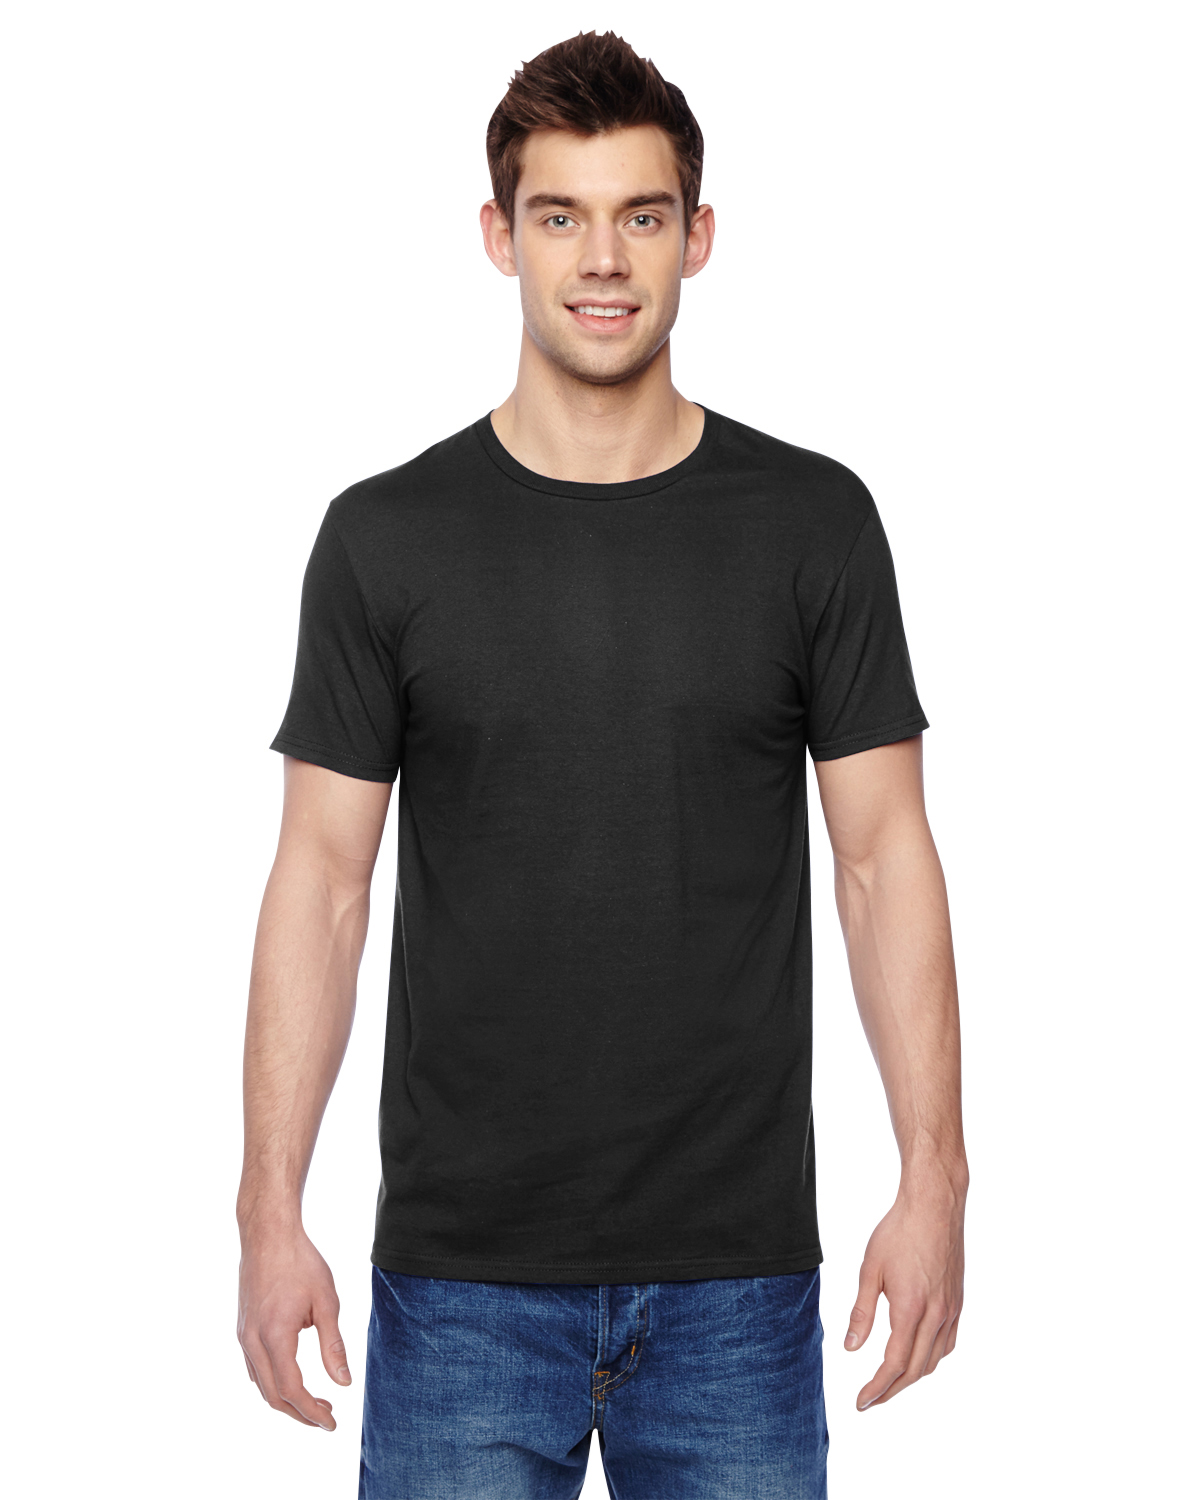 SFLR 100% Sofspun Cotton Jersey Long-Sleeve T-Shirt Fruit of the Loom 4.7 oz 